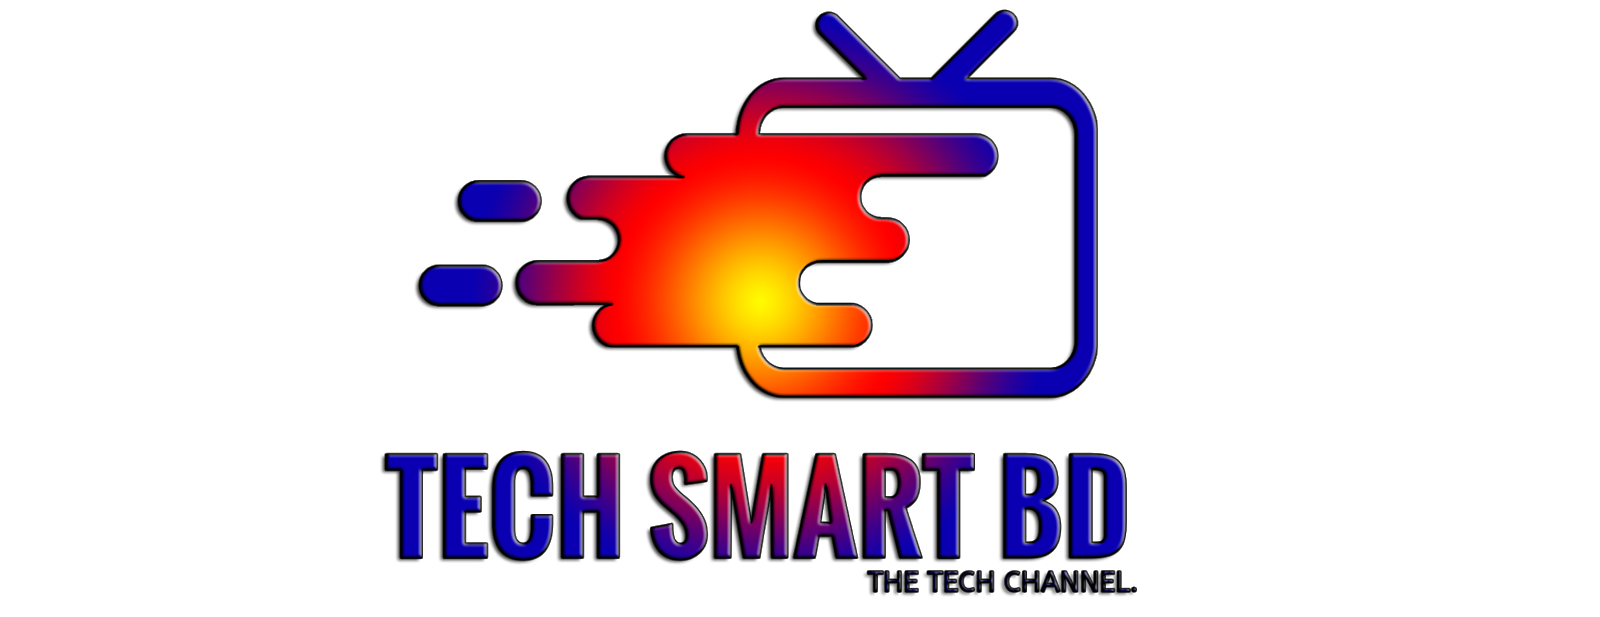 Tech smart bd 24